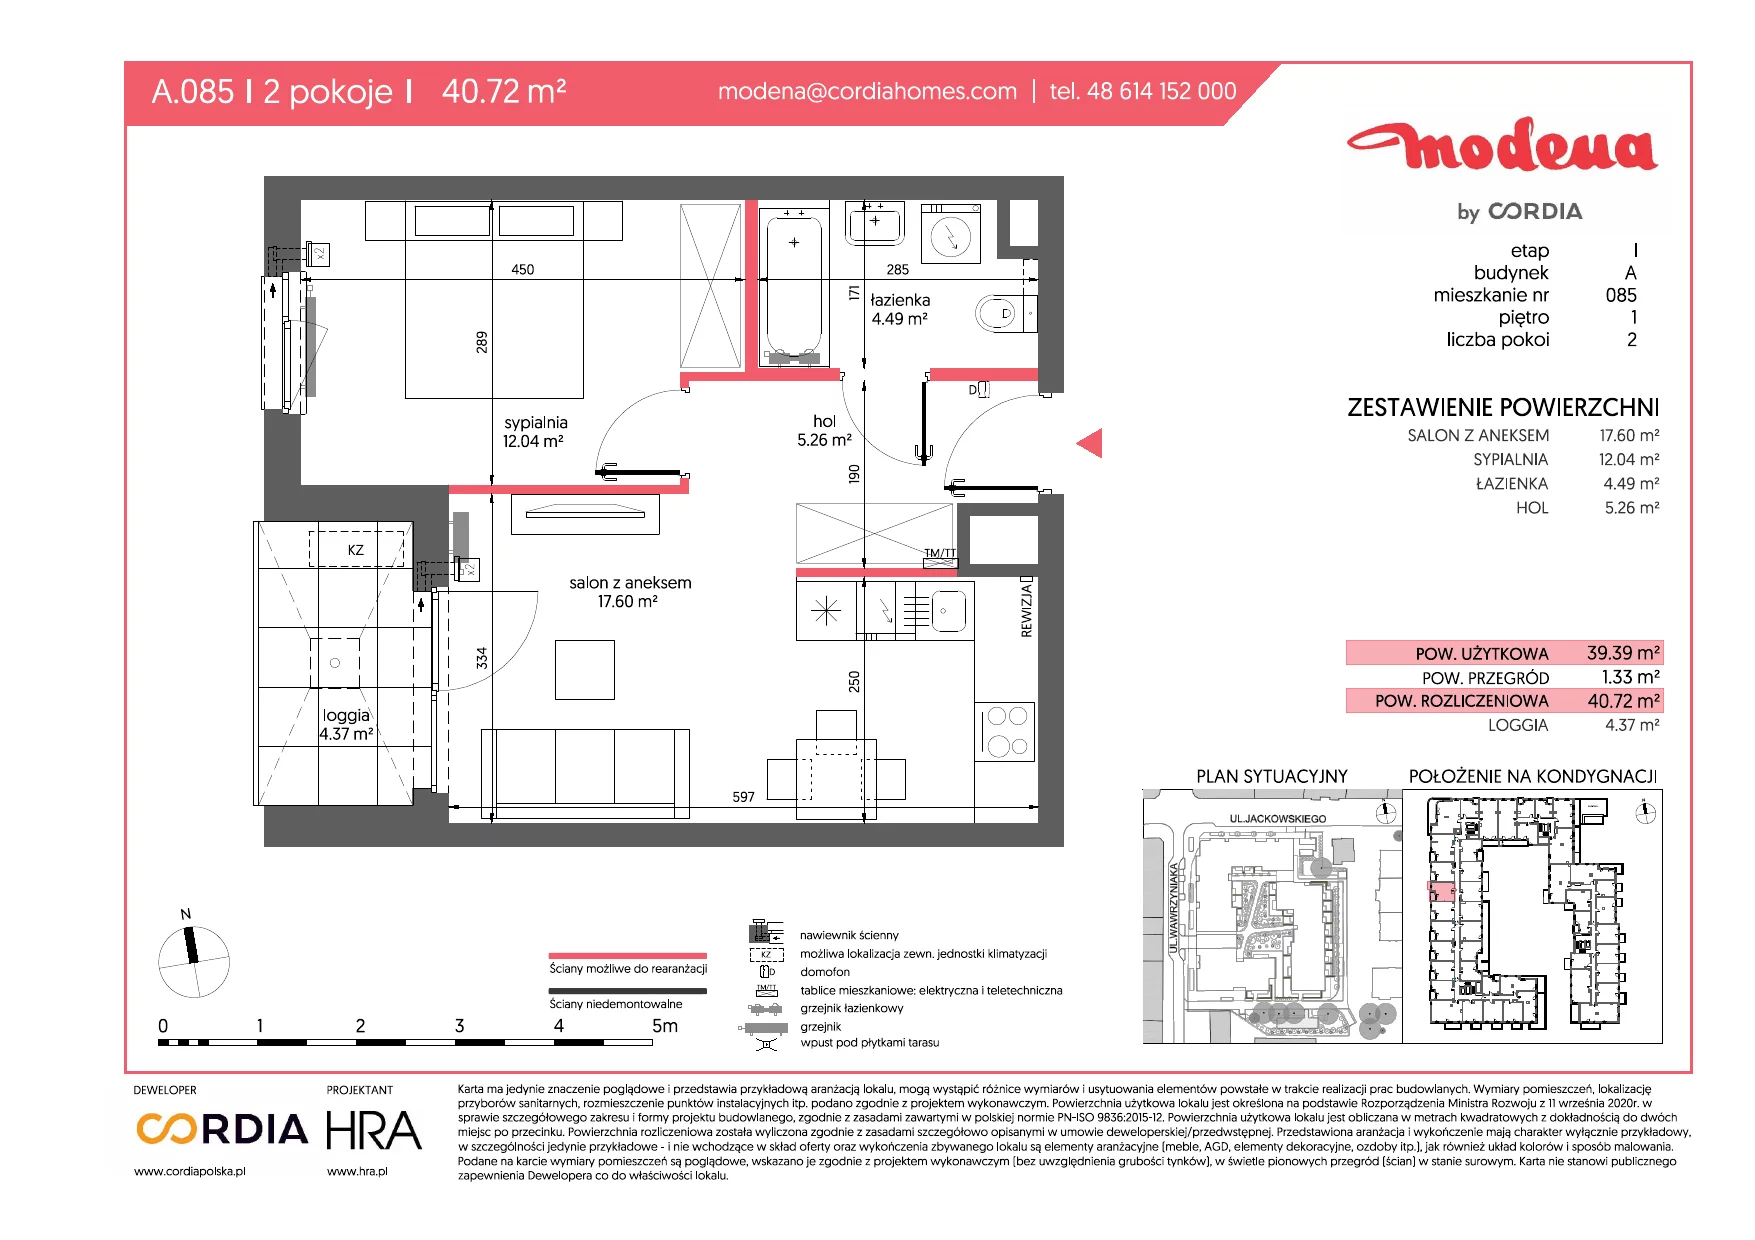 Mieszkanie 40,72 m², piętro 1, oferta nr A.085, Modena, Poznań, Jeżyce, Jeżyce, ul. Jackowskiego 24